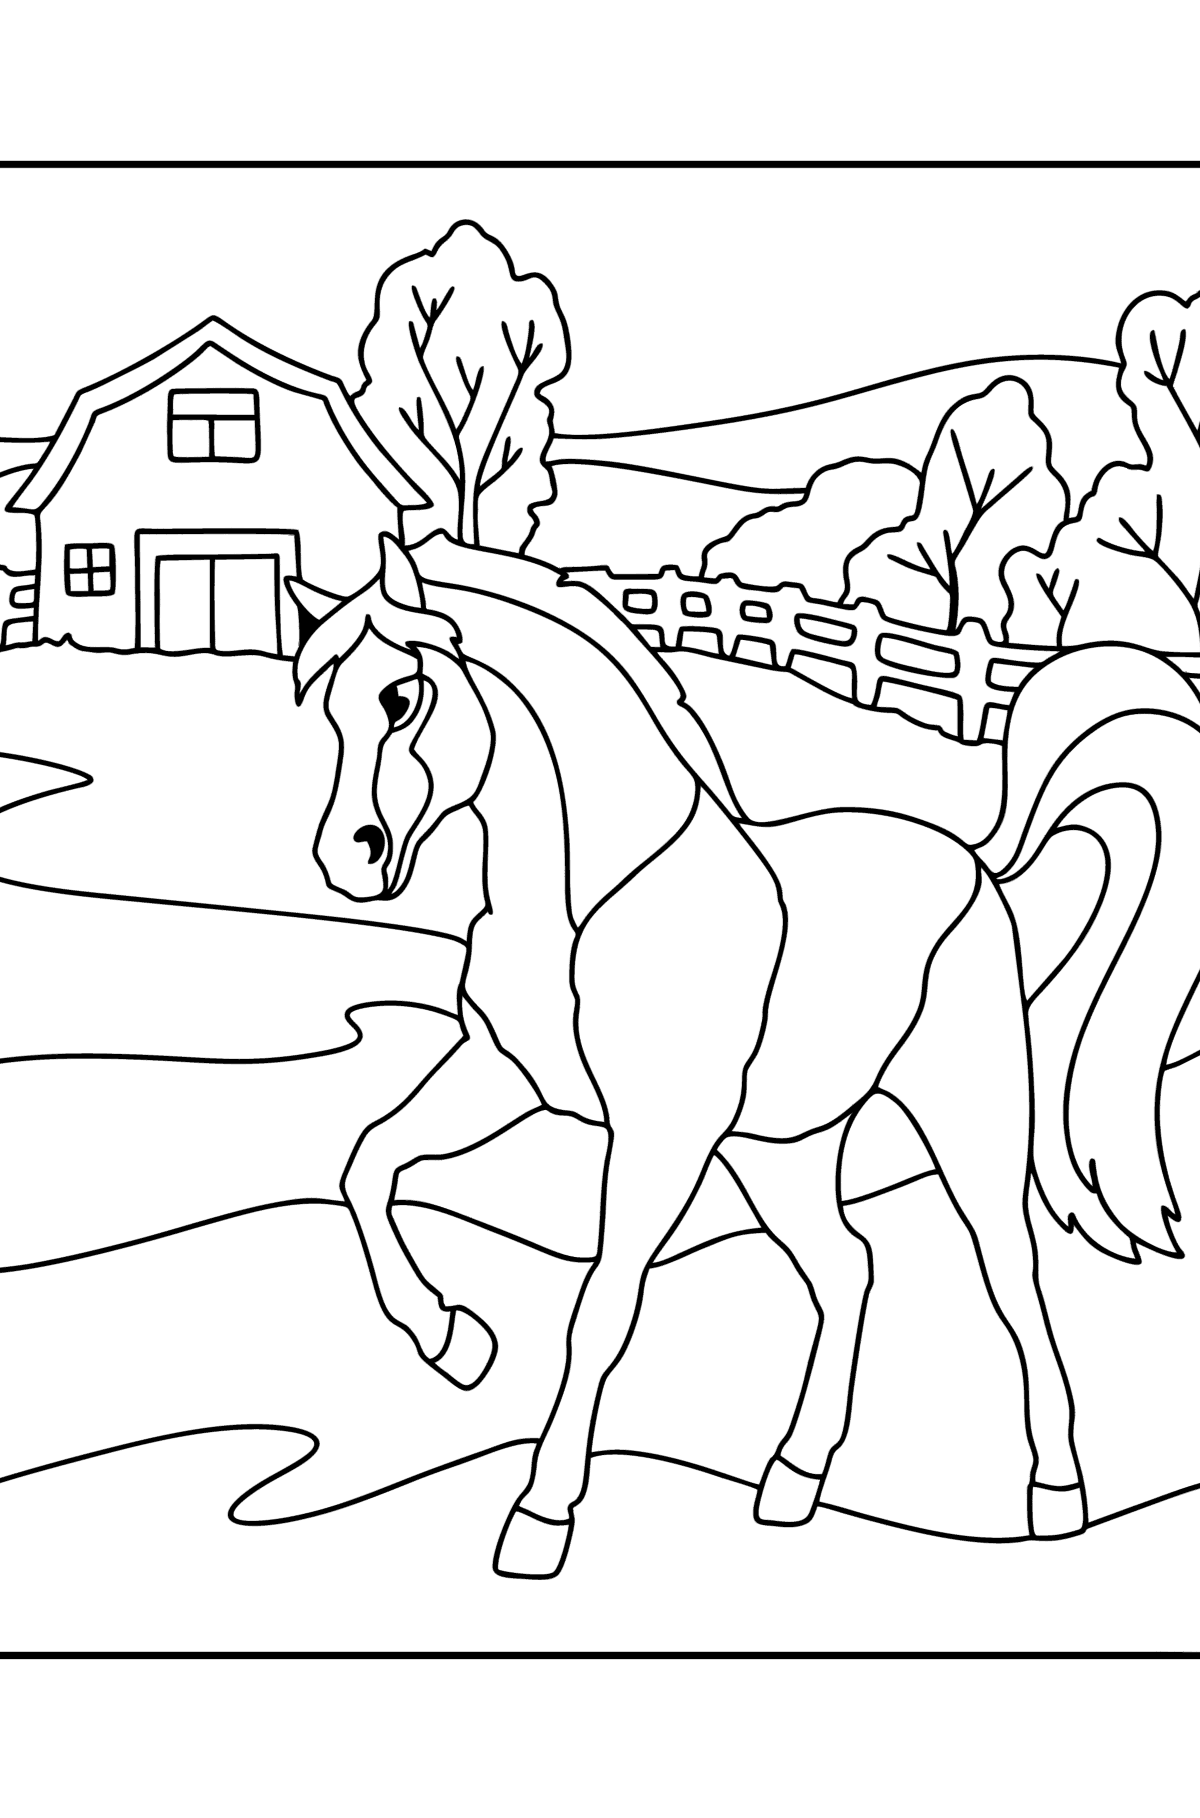 Värityskuva Hevonen maatilalla - Värityskuvat lapsille